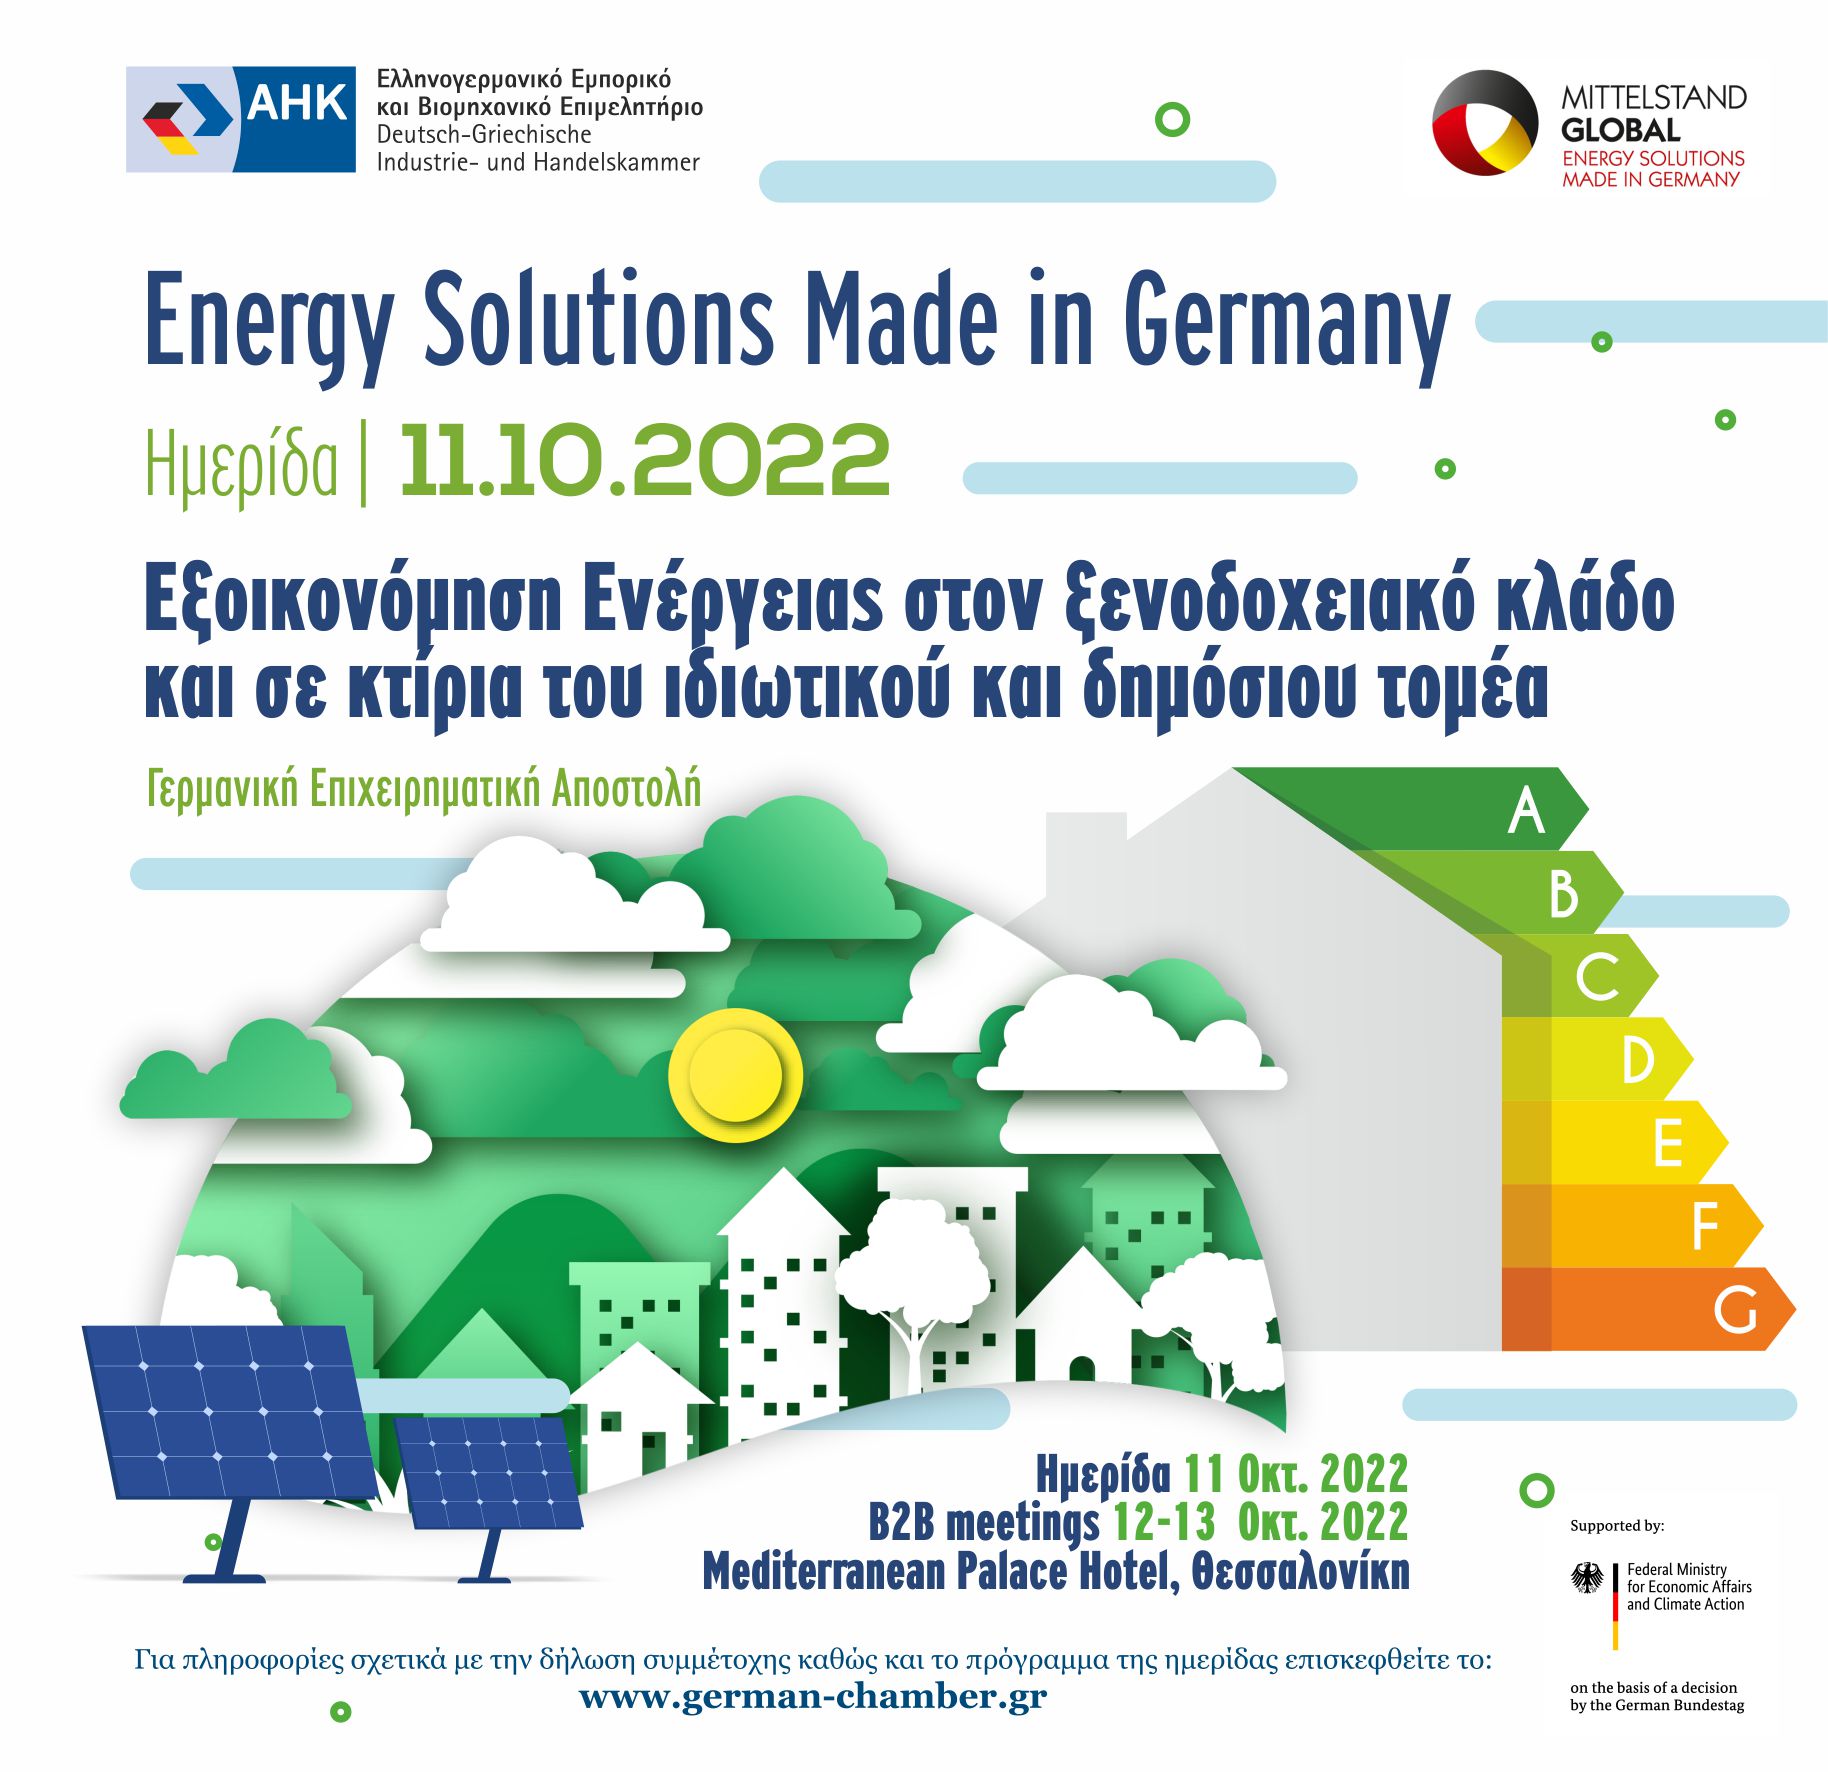 Ελληνογερμανικό Επιμελητήριο: Στη Θεσσαλονίκη 6 γερμανικές επιχειρήσεις εξοικονόμησης ενέργειας σε κτίρια